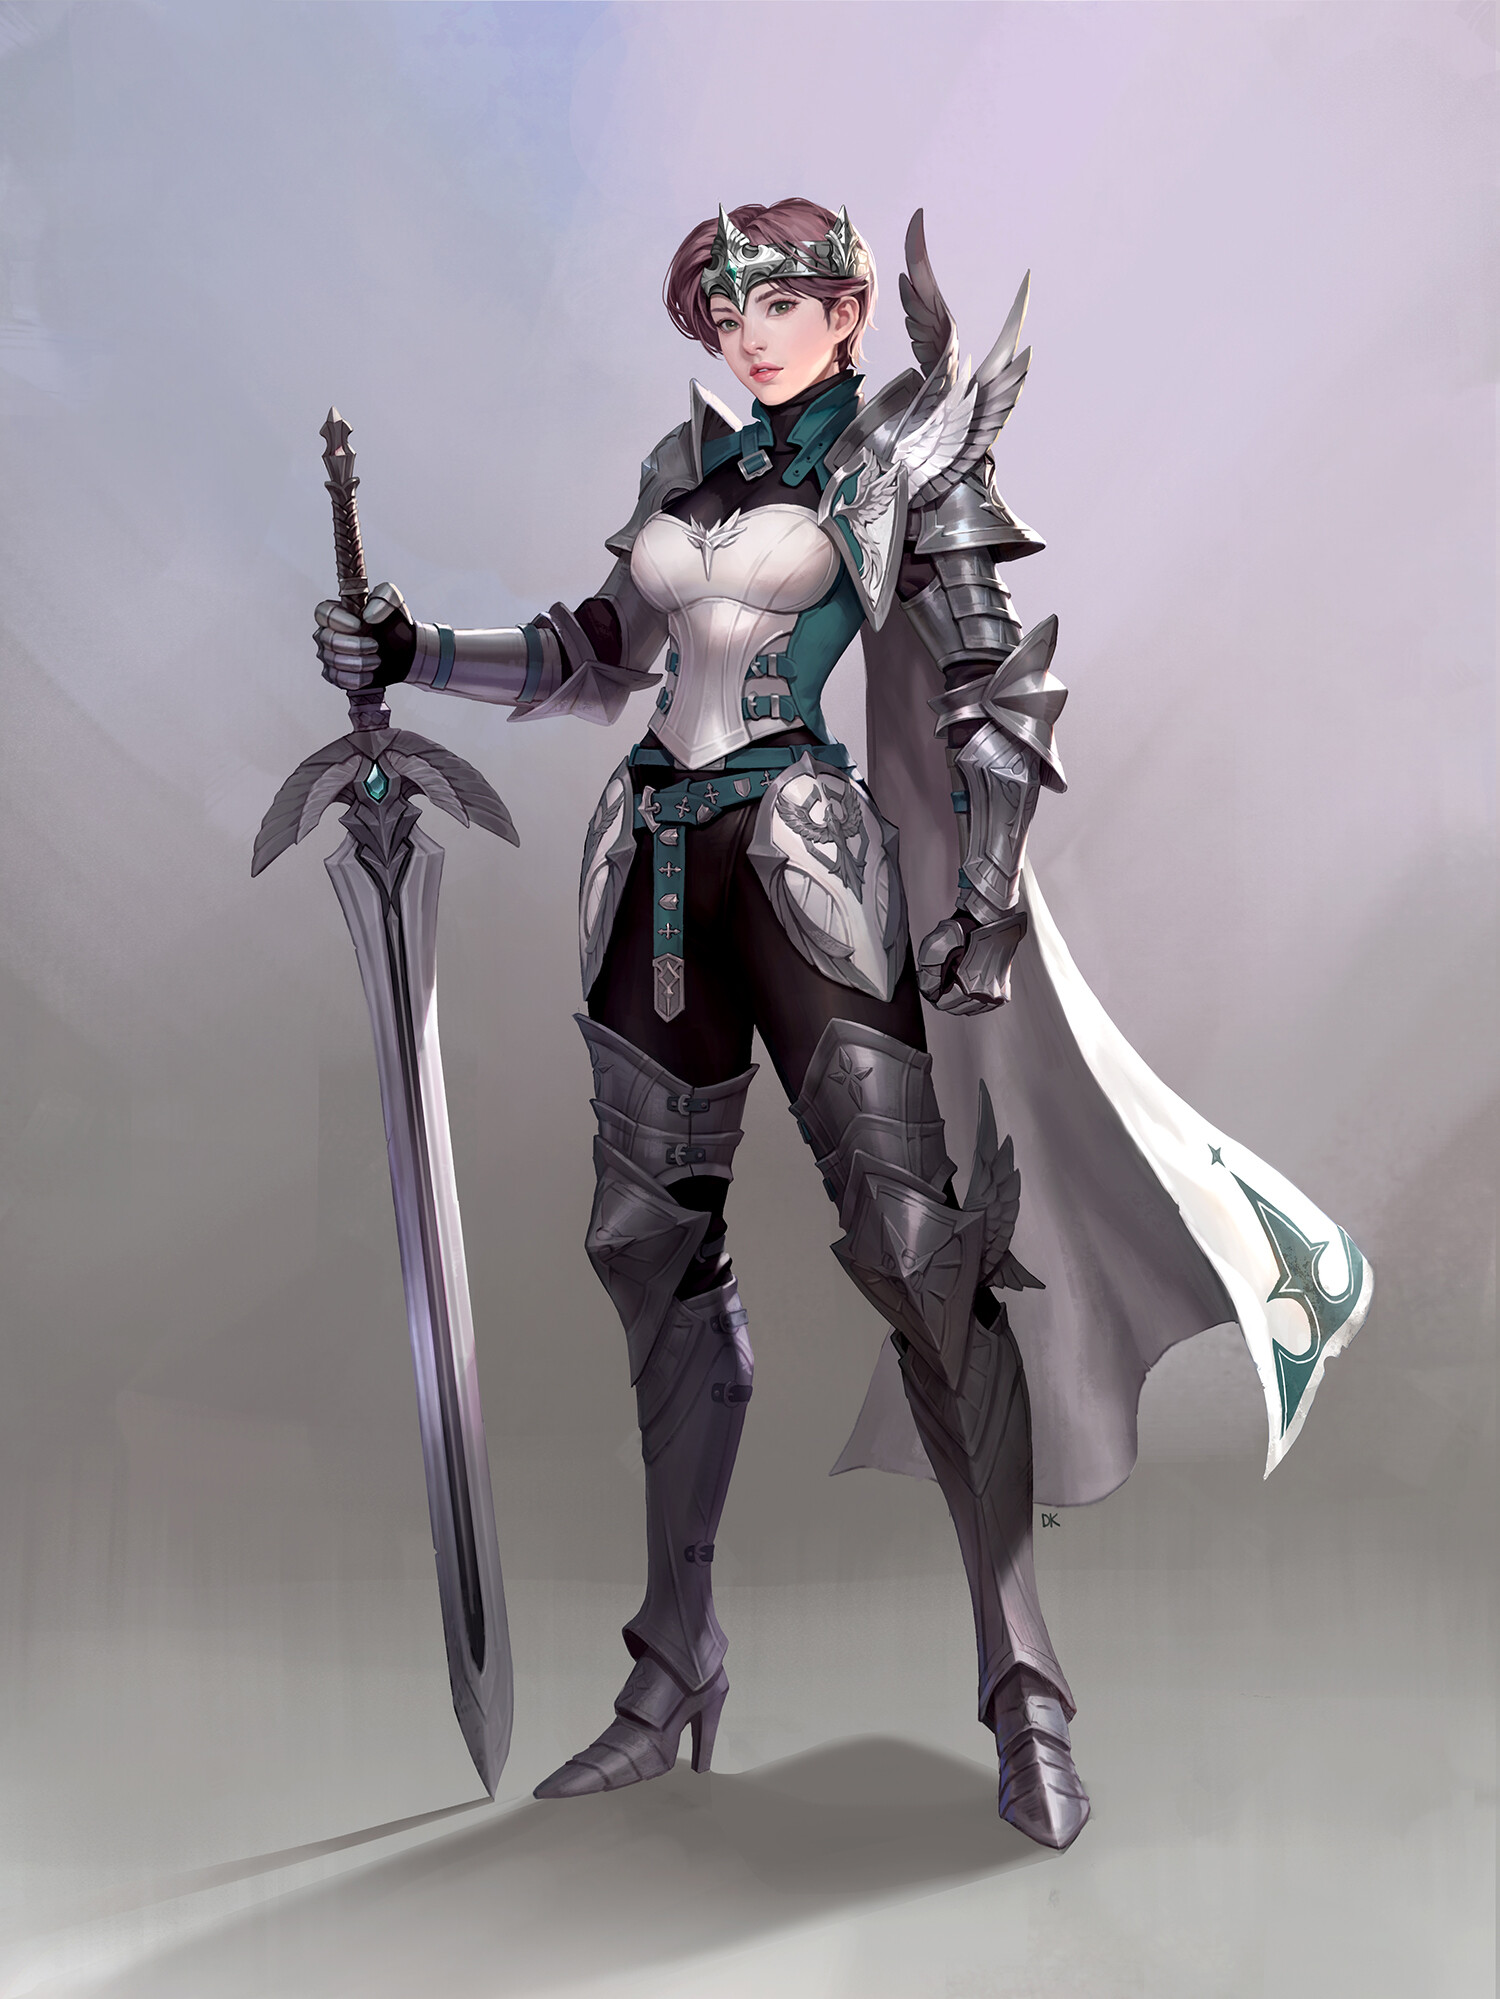 ArtStation - Princess Knight